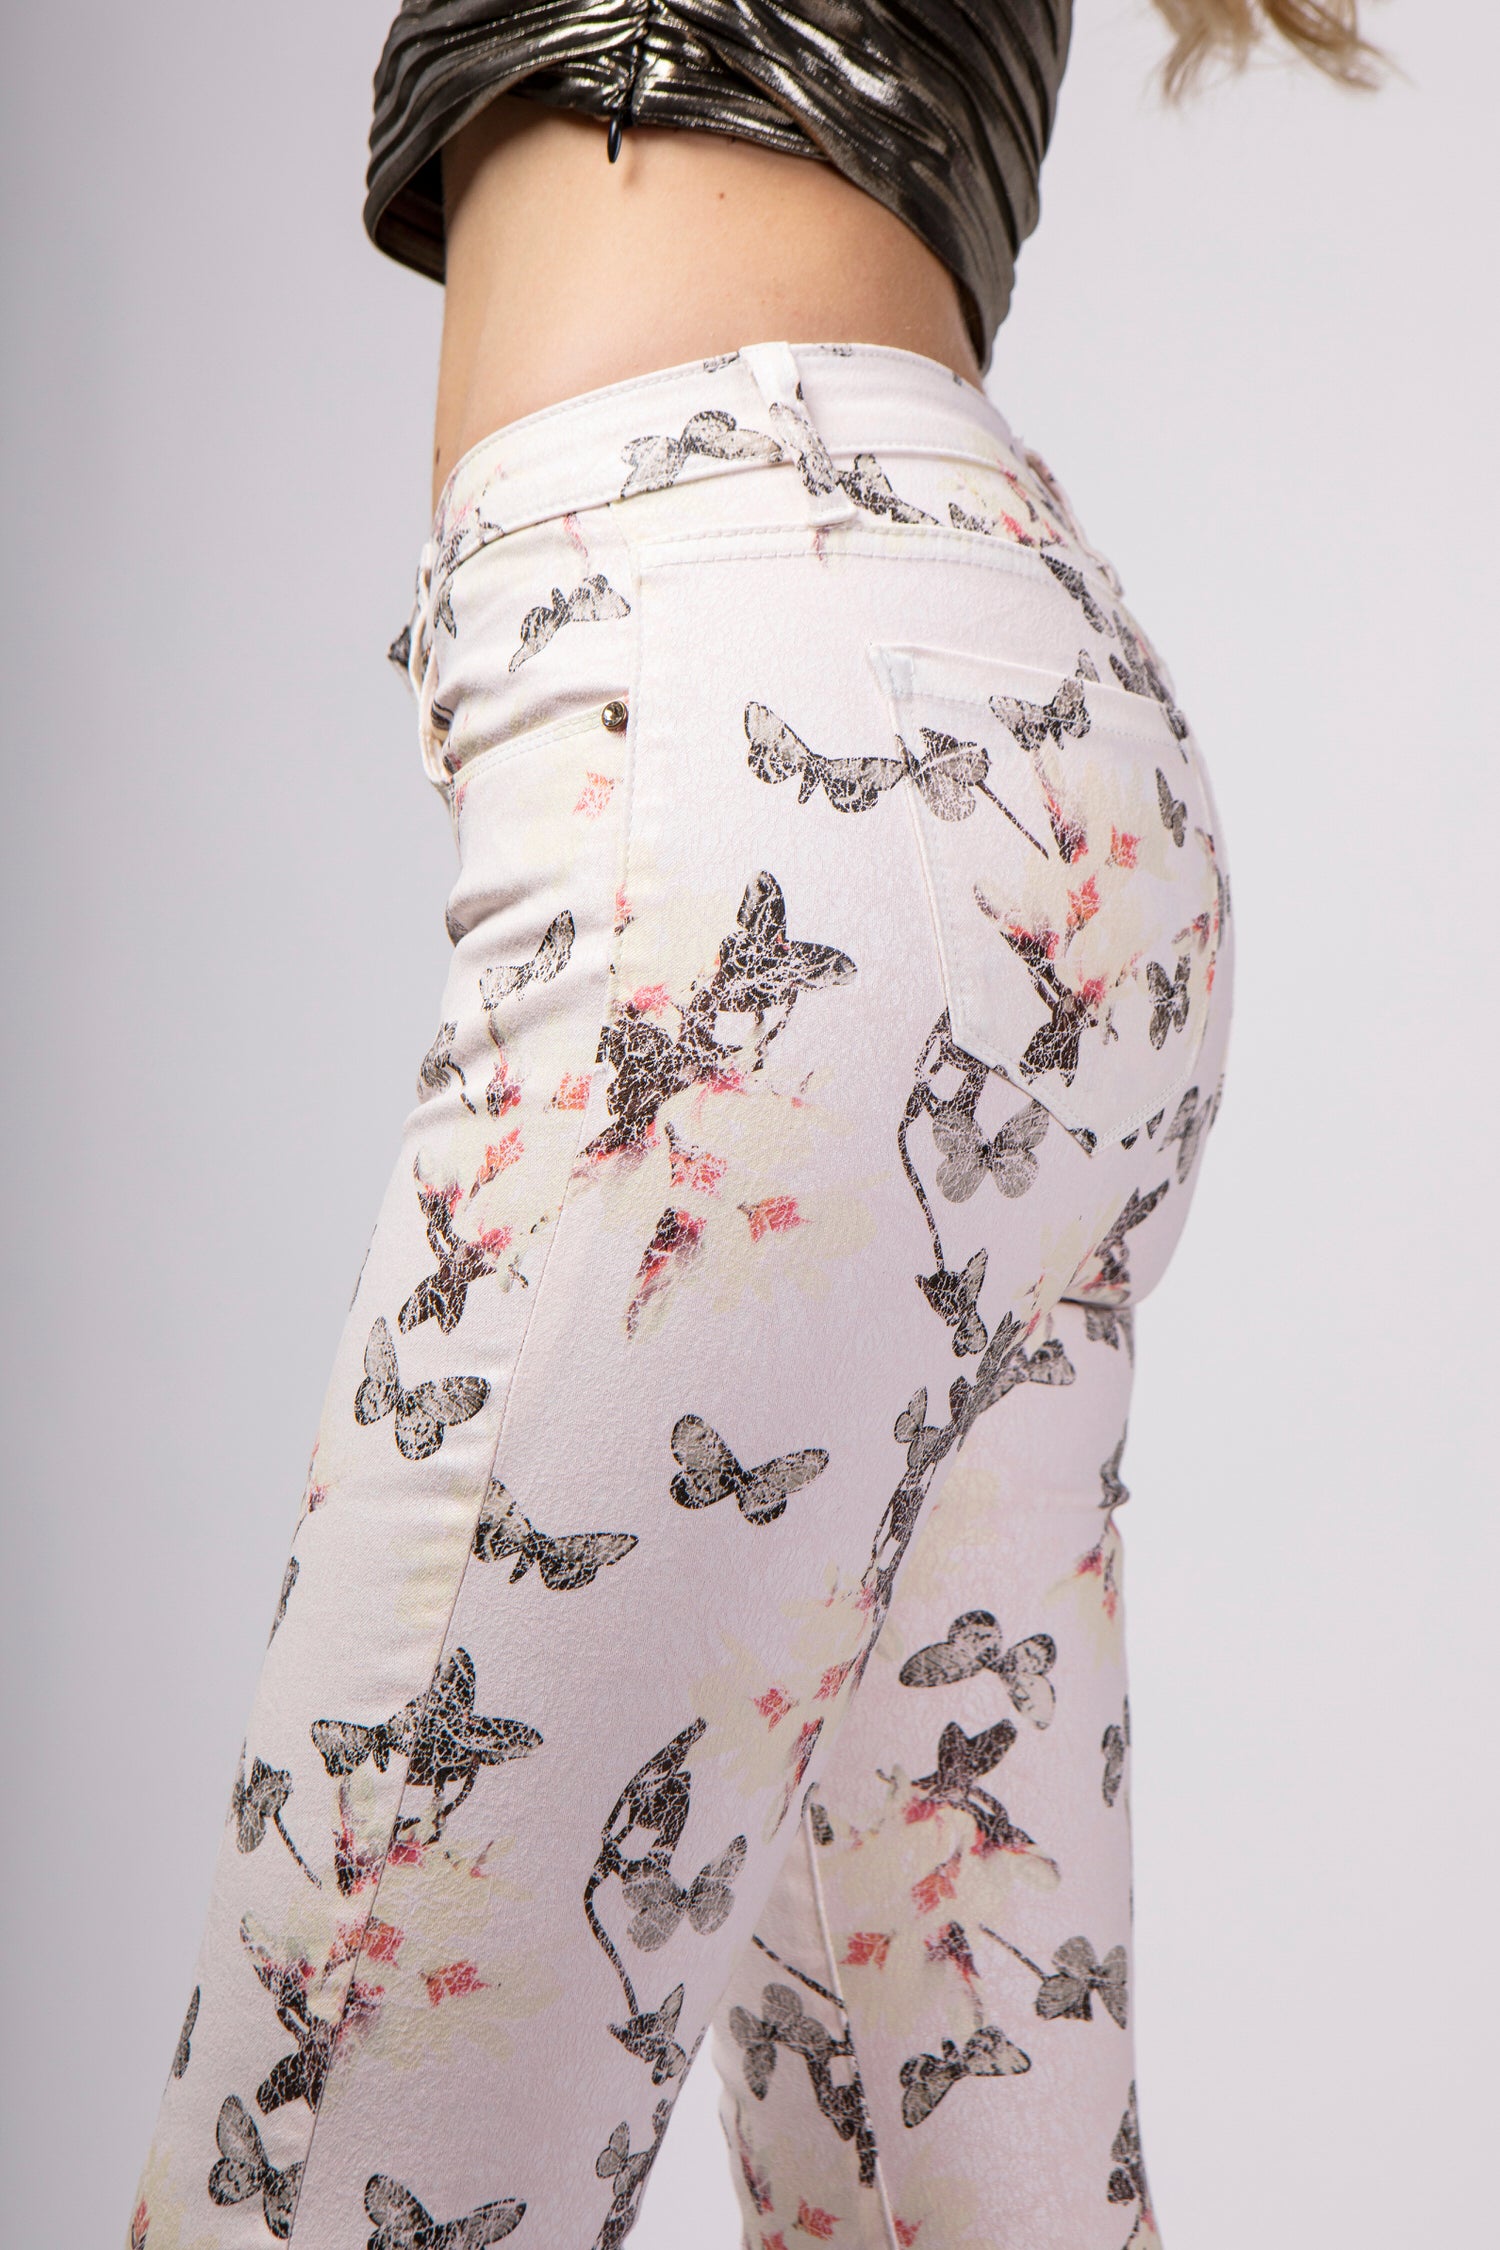 Pantalones de mariposas originales - Sula